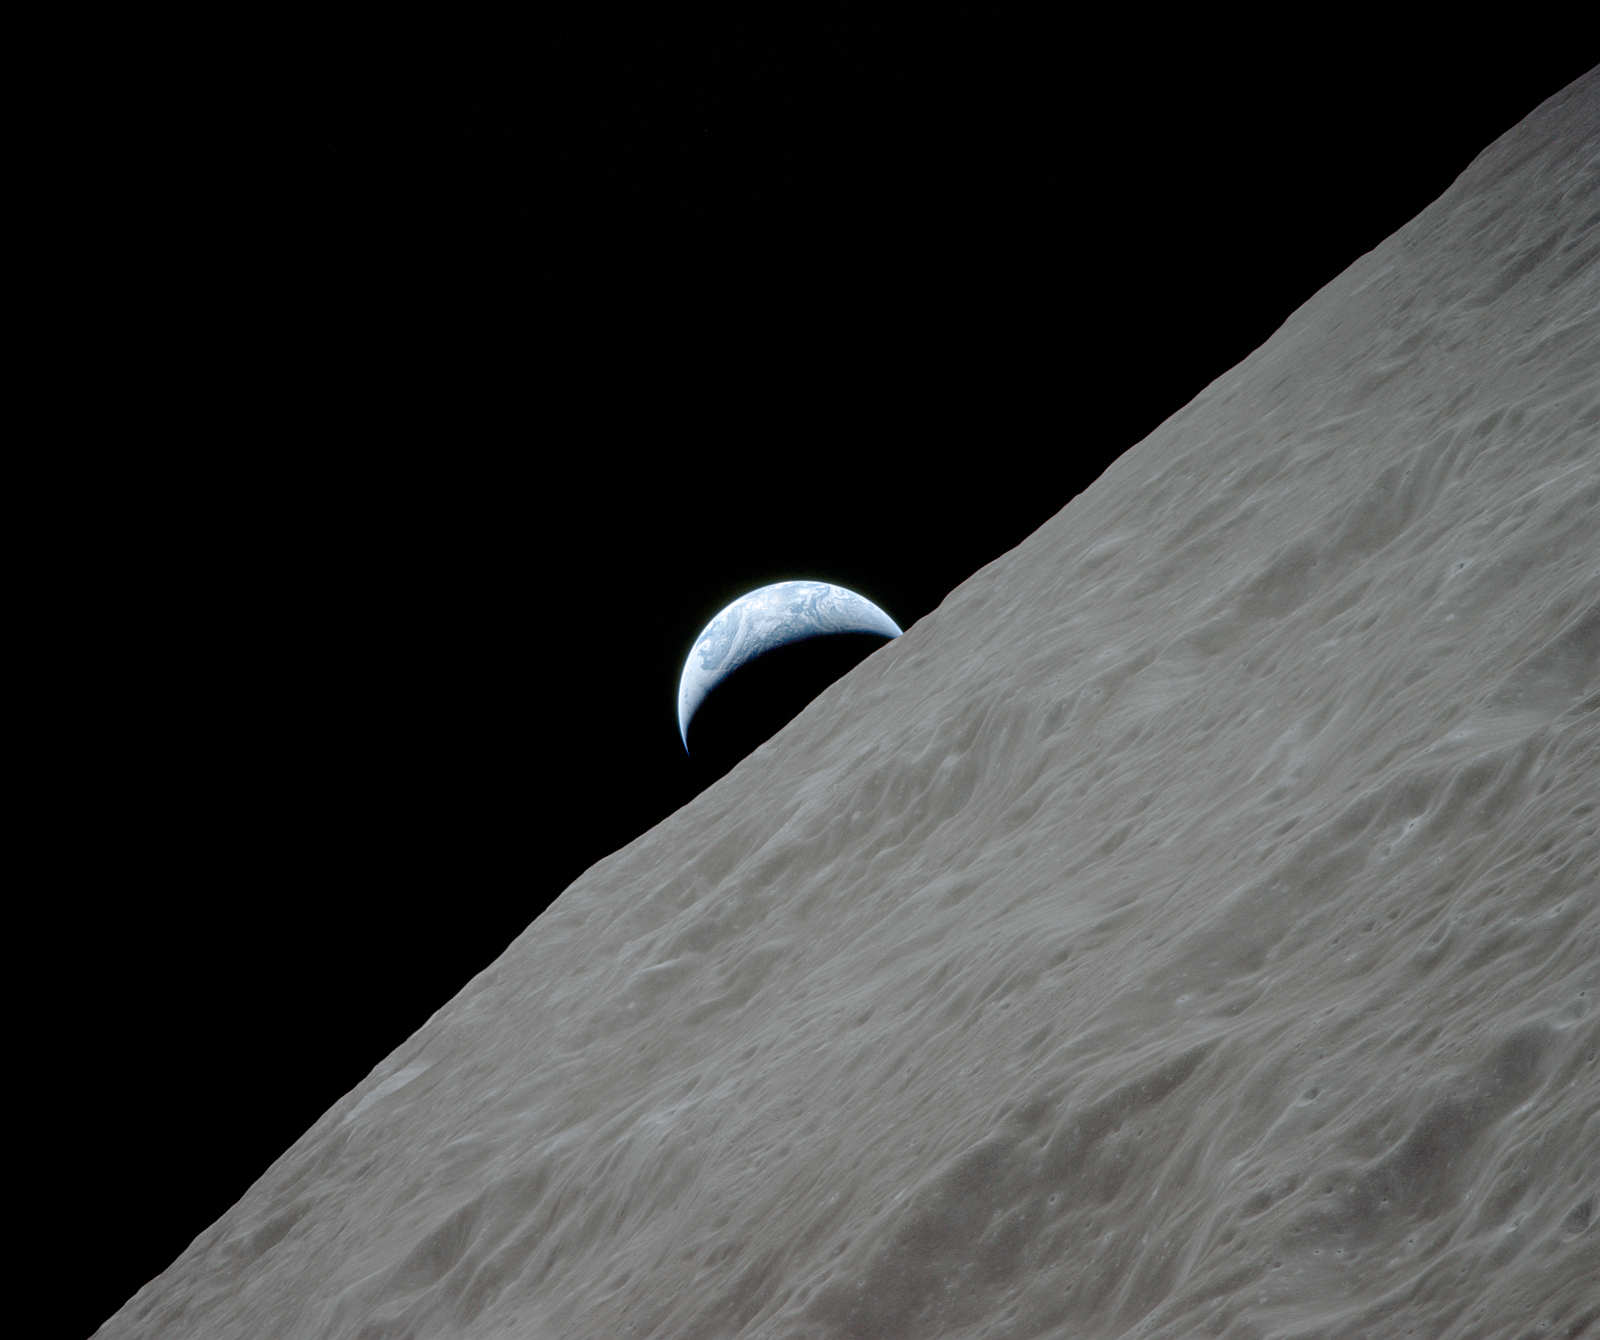 Ziemia nad księżycowym horyzontem - Apollo 17